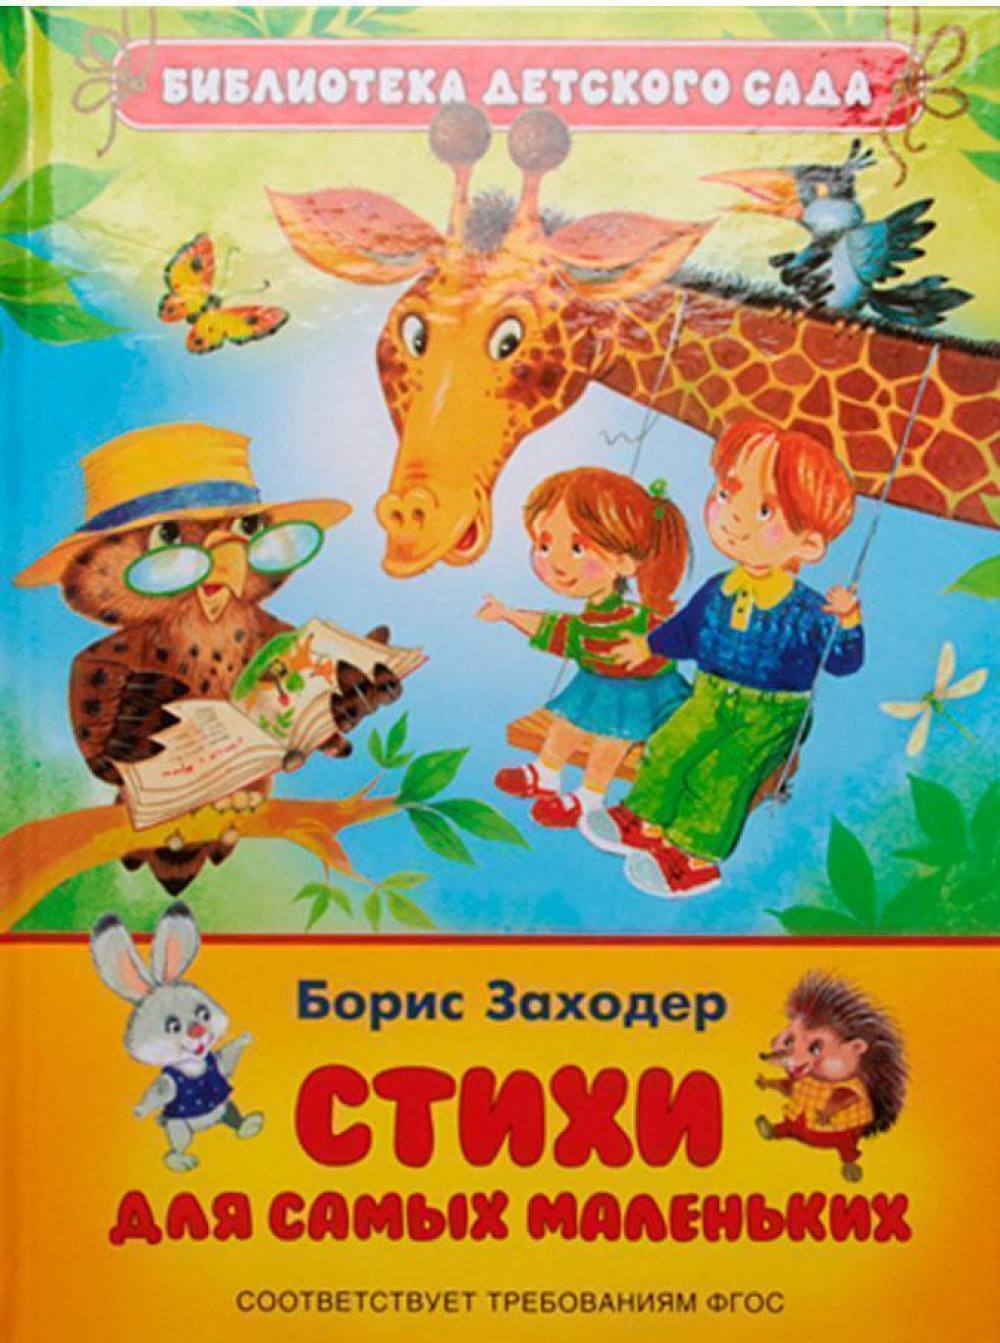 Книжка для детей. Артикул 097600020